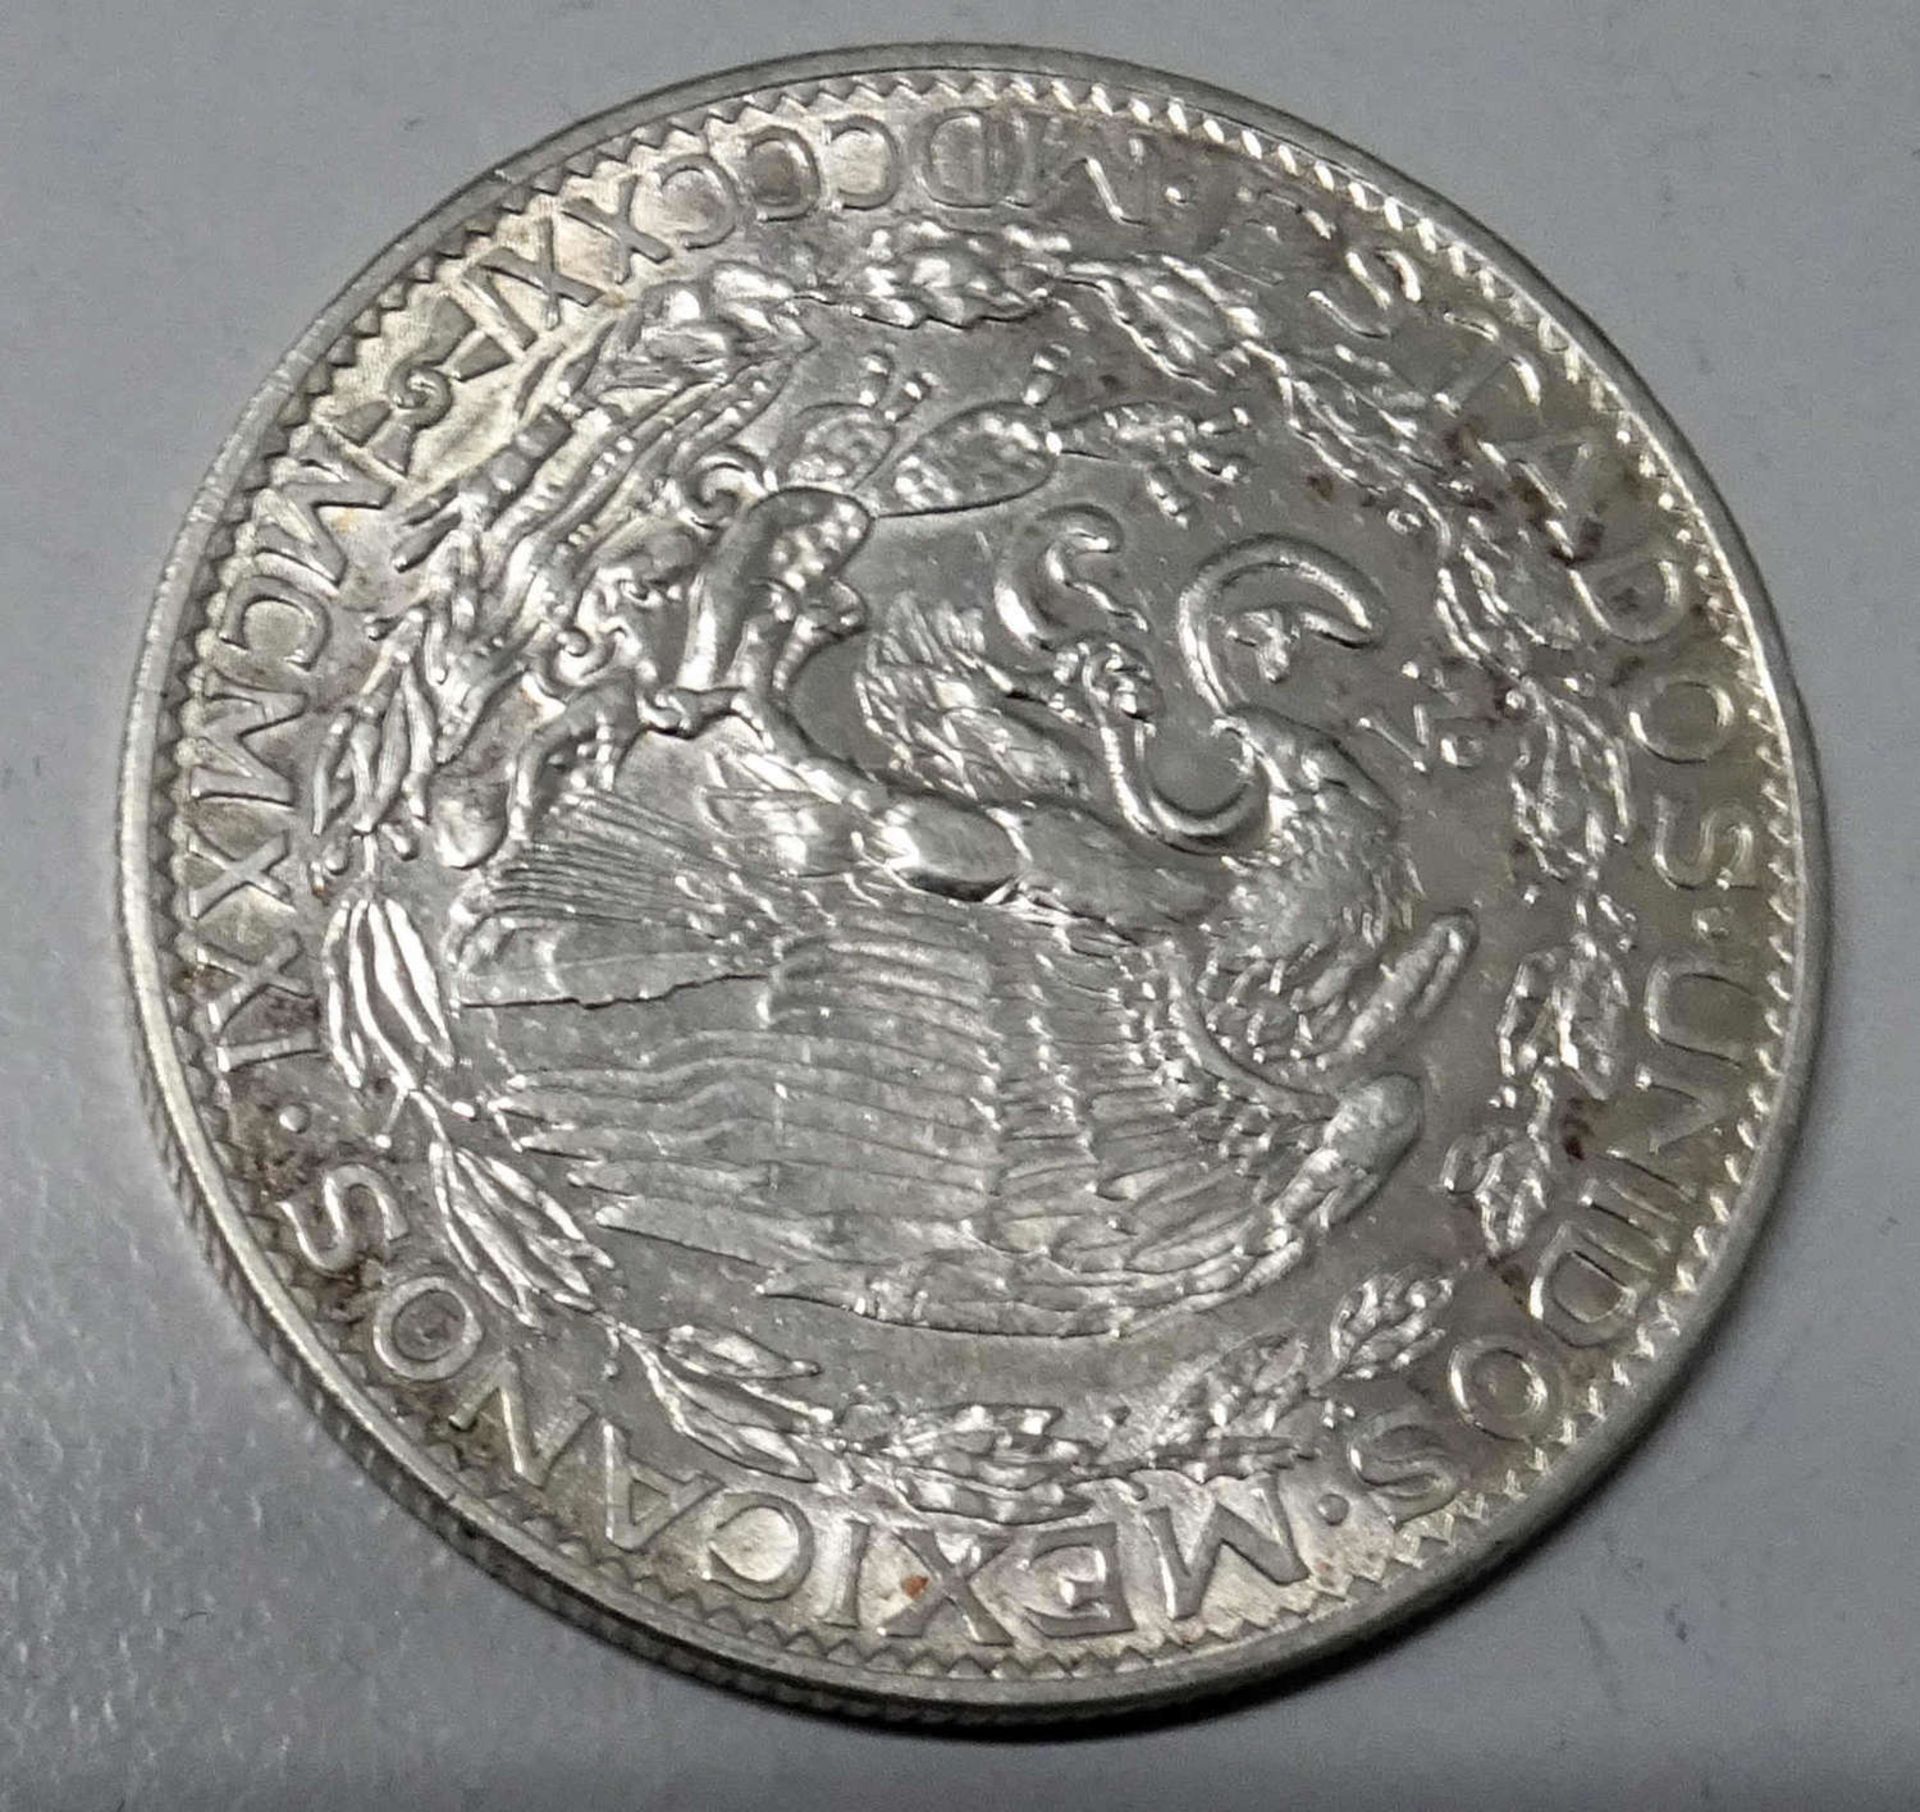 Mexico Silbermünze 1921, Dos Pesos, 24g Plata Pura. Katalog Nr. KM 20 / 462Mexico silver coin